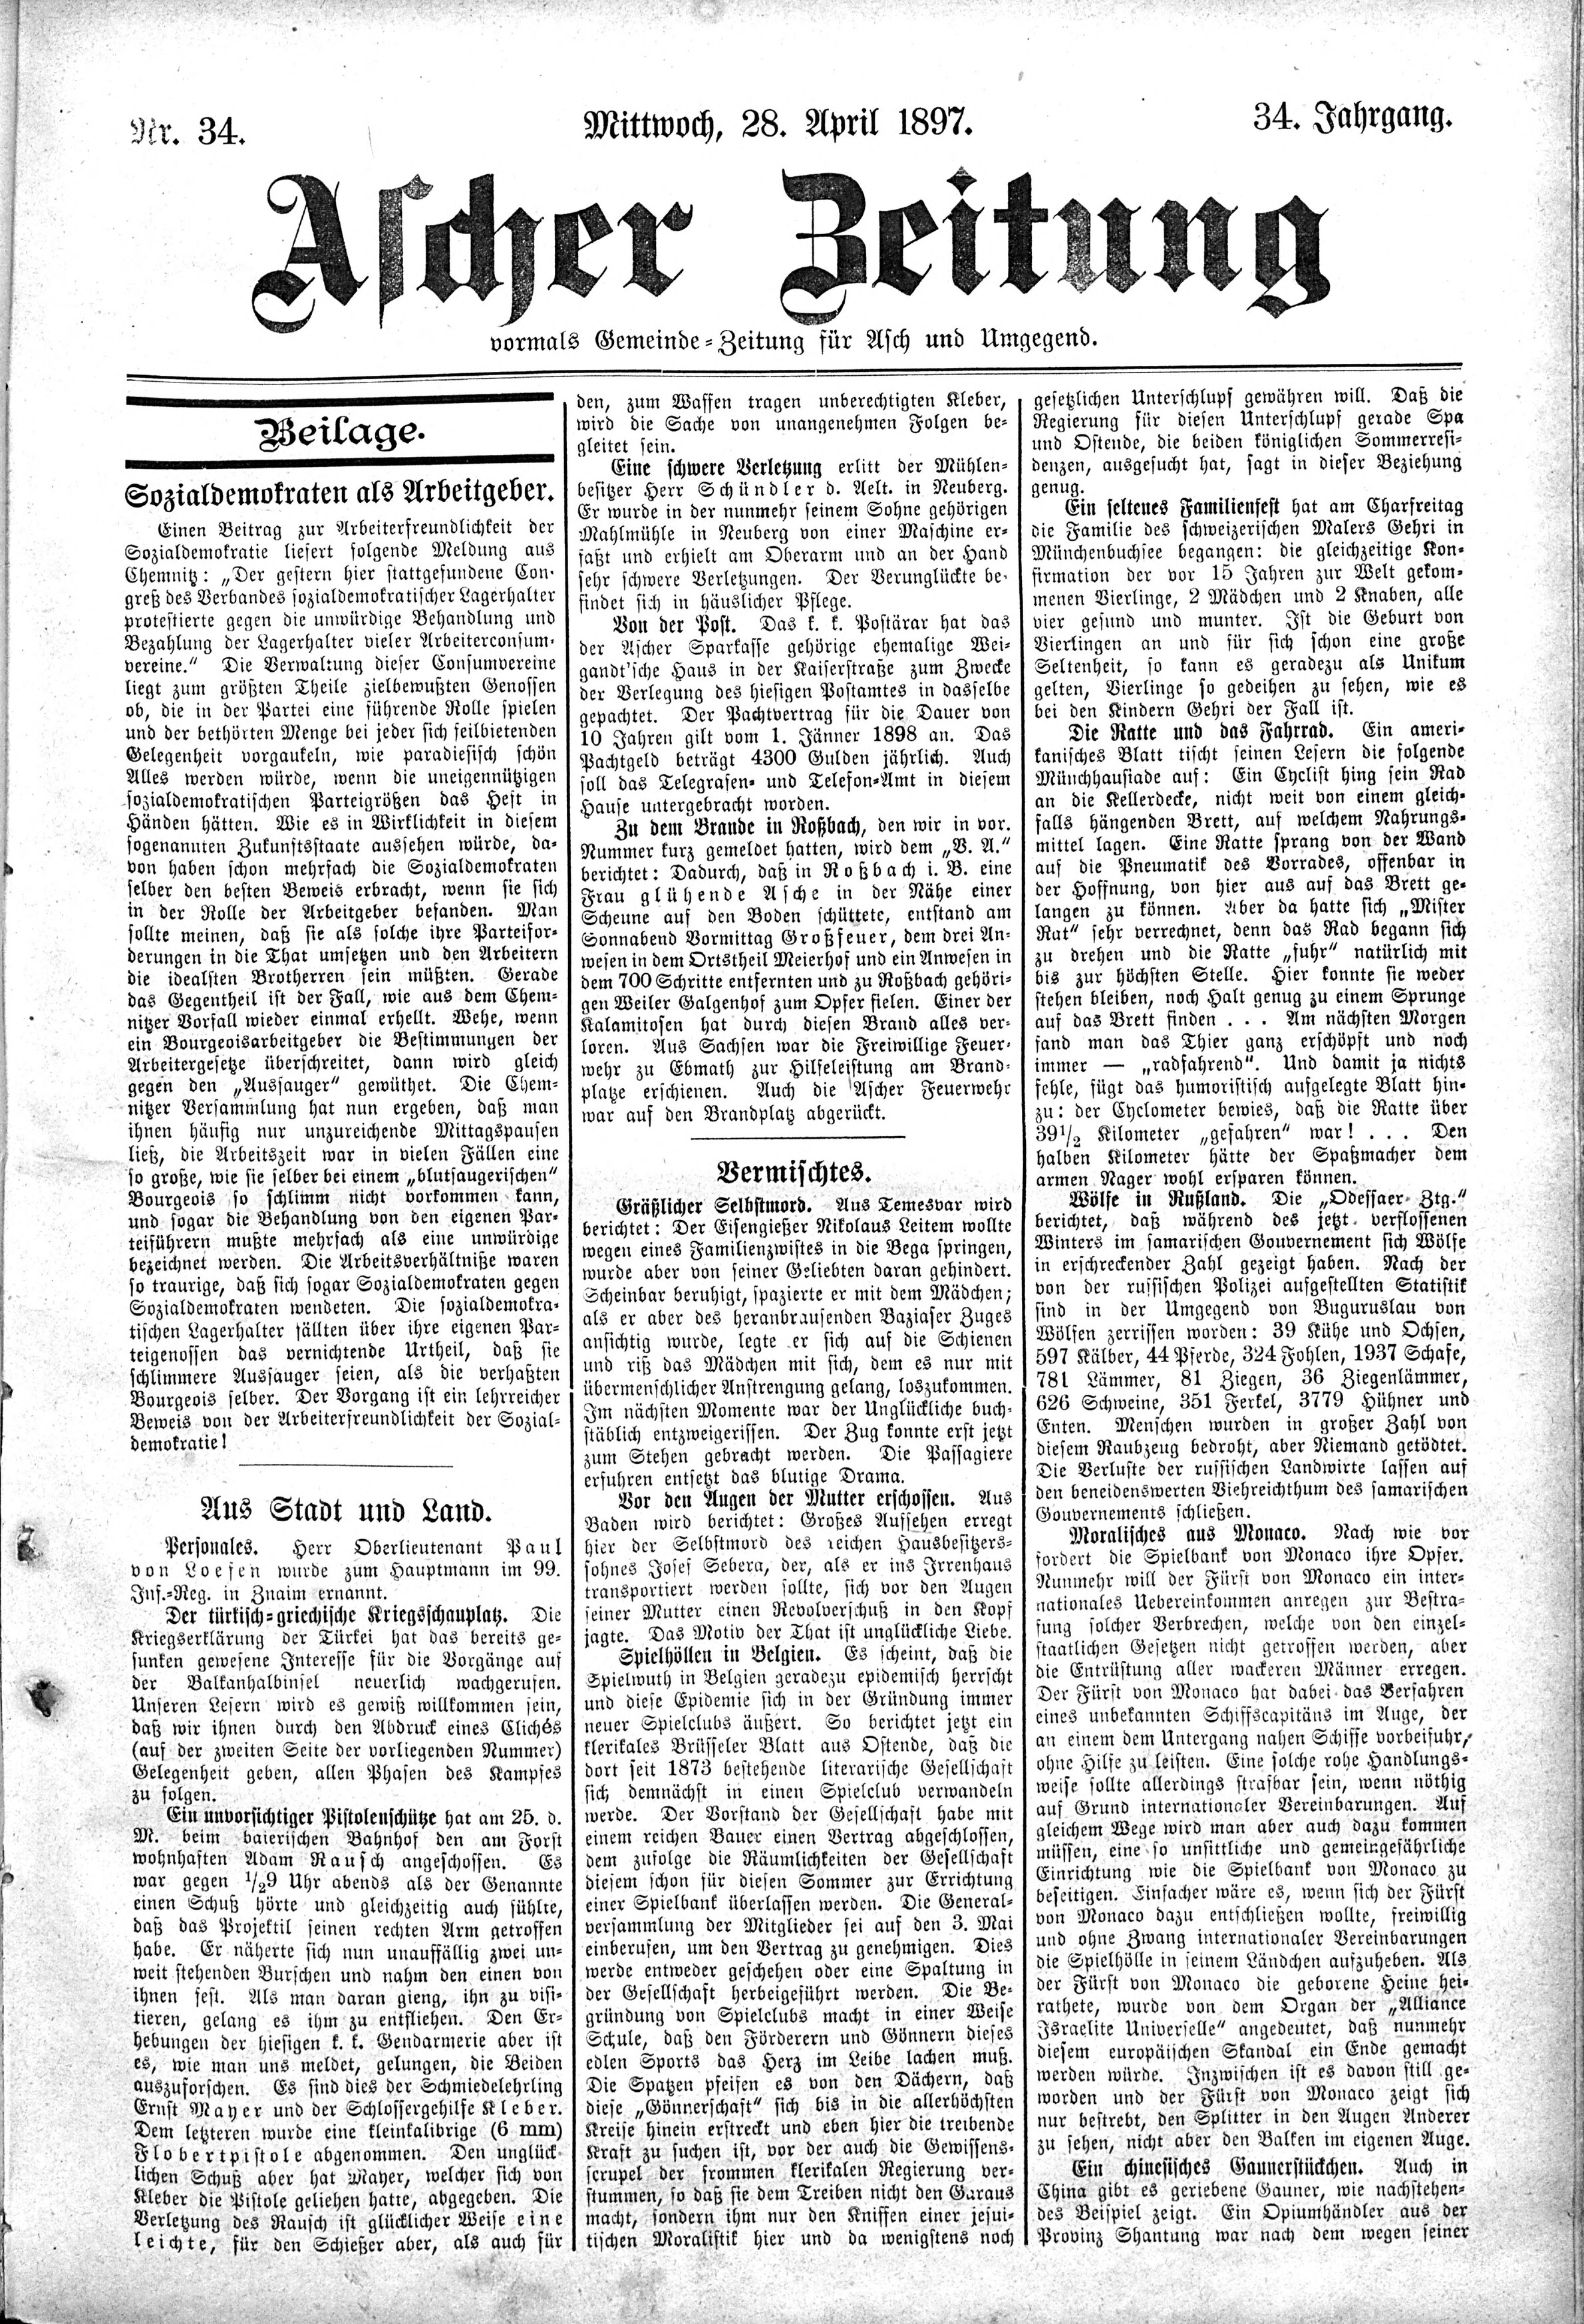 19. soap-ch_knihovna_ascher-zeitung-1897-04-28-n34_1545